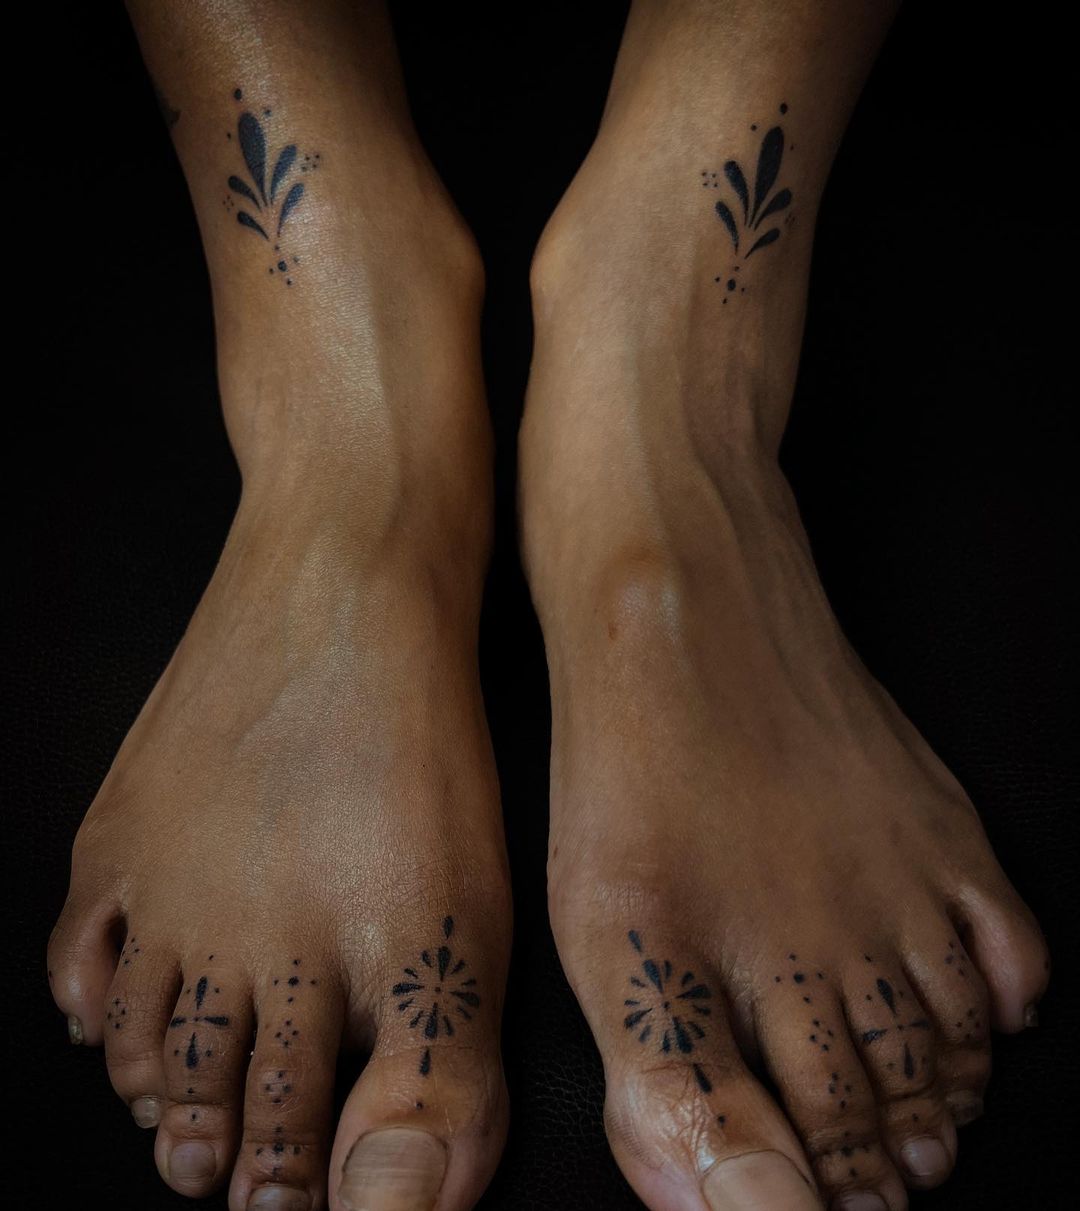 cute feet tattoo ideas by melpzvc